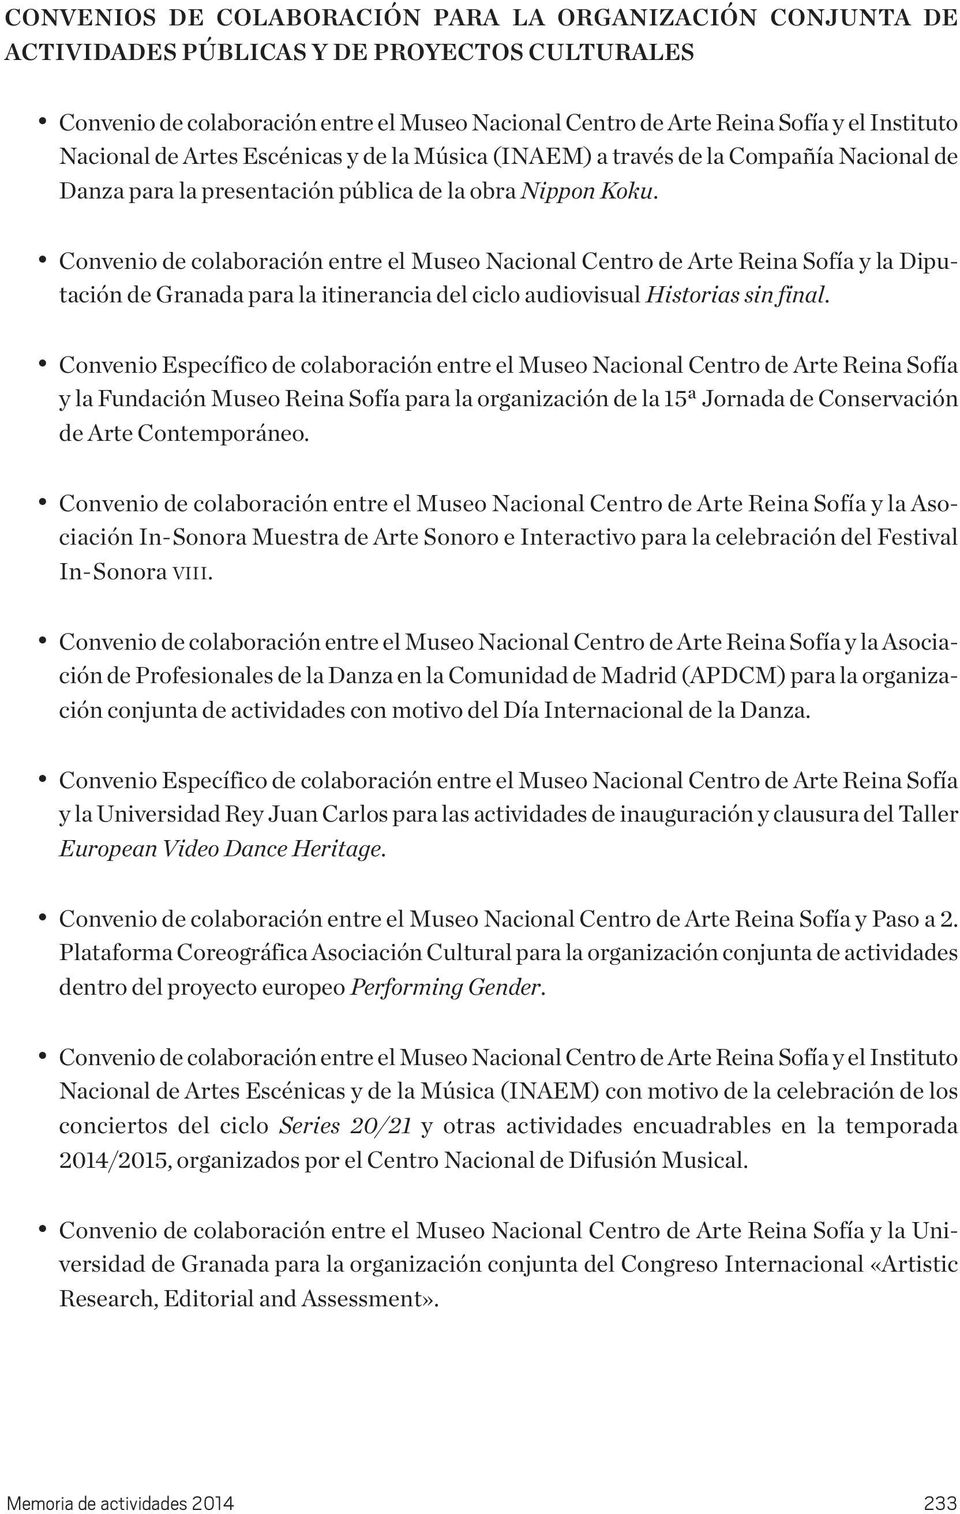 Convenio de coaboración entre e Museo Naciona Centro de Arte Reina Sofía y a Diputación de Granada para a itinerancia de cico audiovisua Historias sin fina.